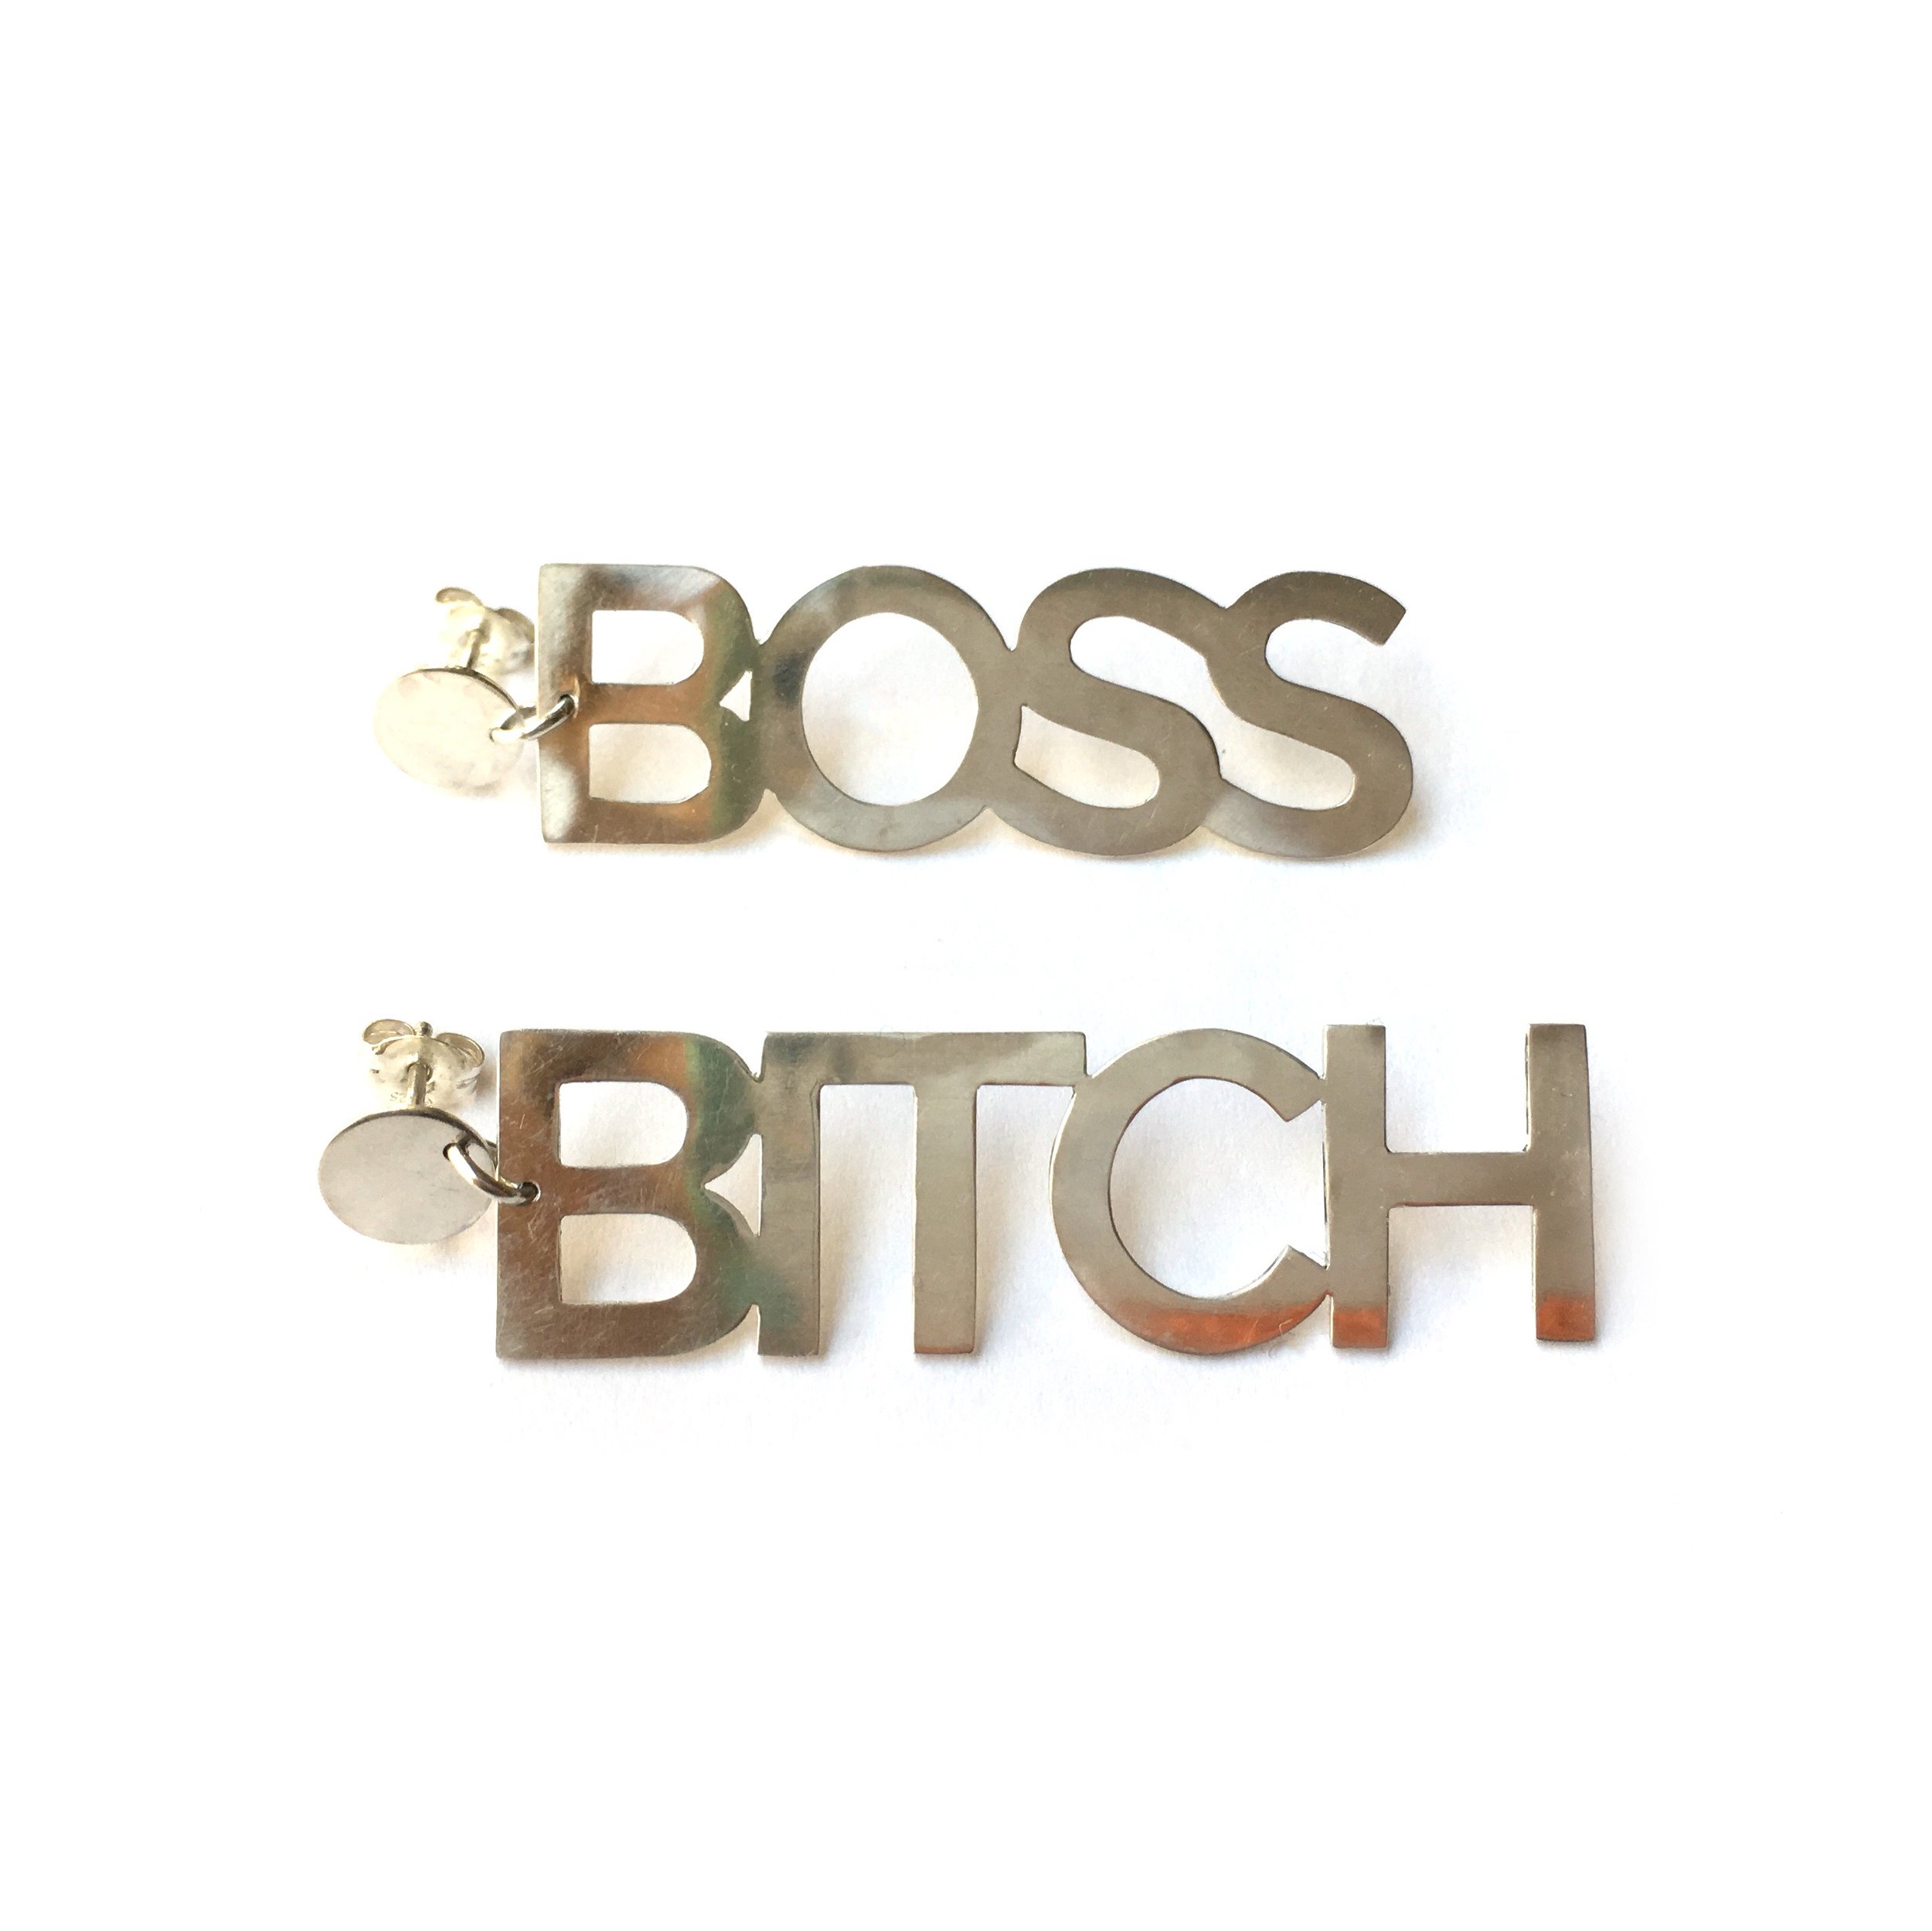 boss bitch earrings.jpeg